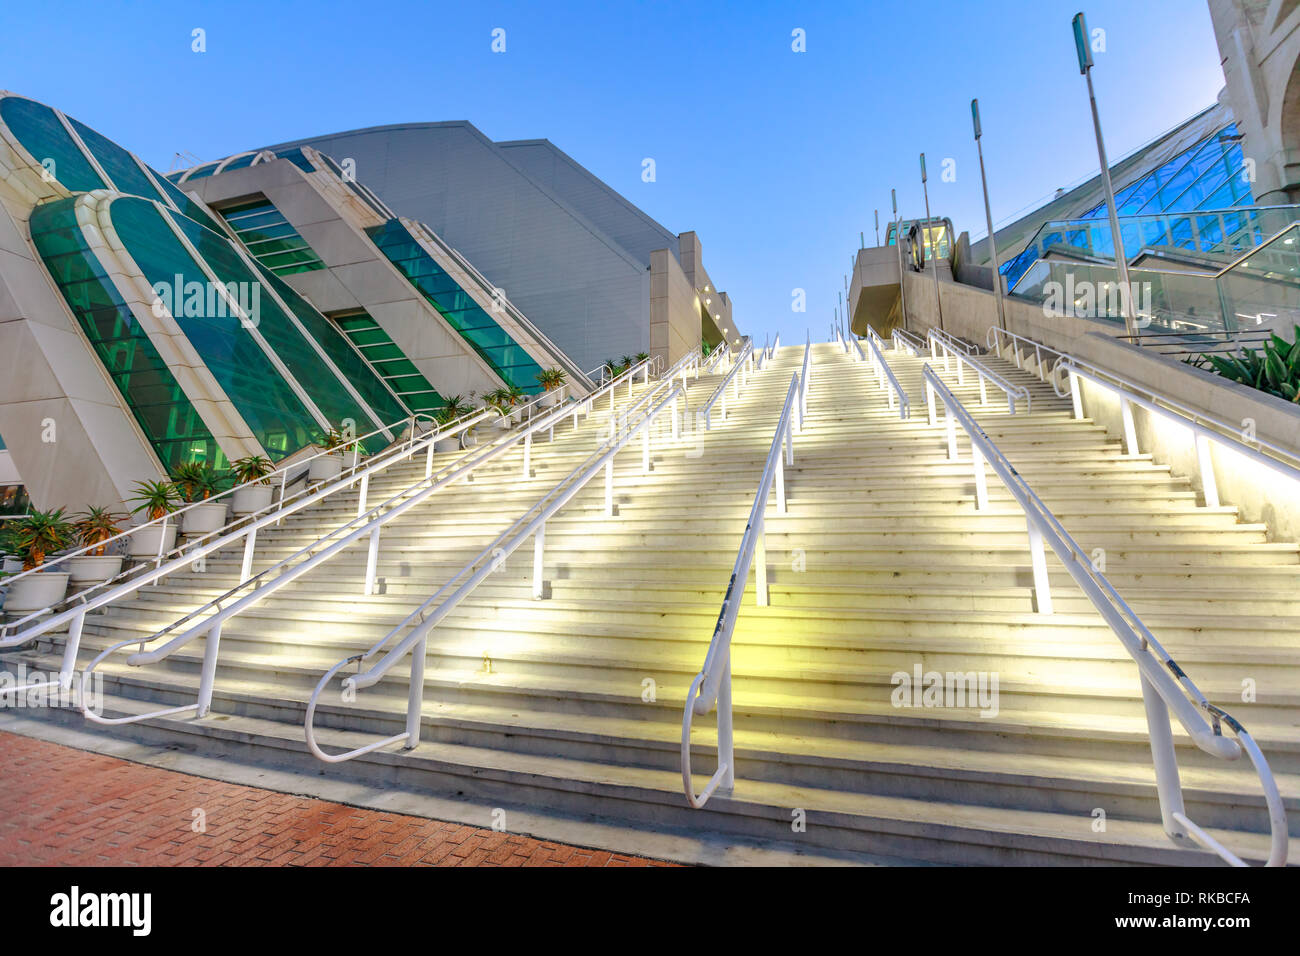 Vue en perspective d'utilisation de San Diego Convention Center au crépuscule situé à Marina district près de Gaslamp Quarter. Le centre-ville de San Diego, Californie Banque D'Images